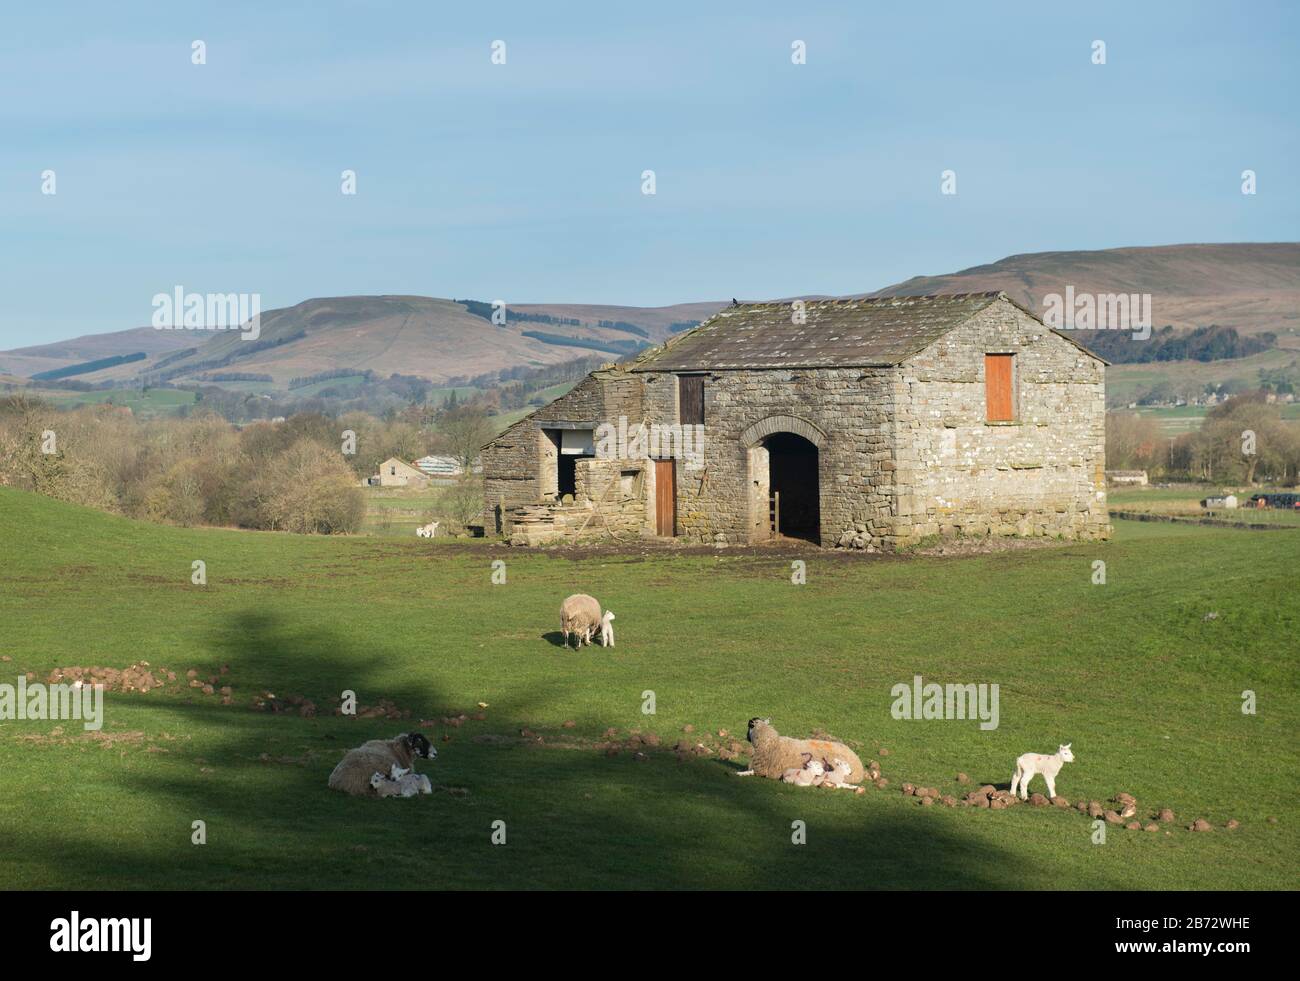 Moutons et agneaux nés récemment paissent dans un champ en face d'une grange en pierre près de Hawes, Wensleydale, Yorkshire Dales National Park Banque D'Images